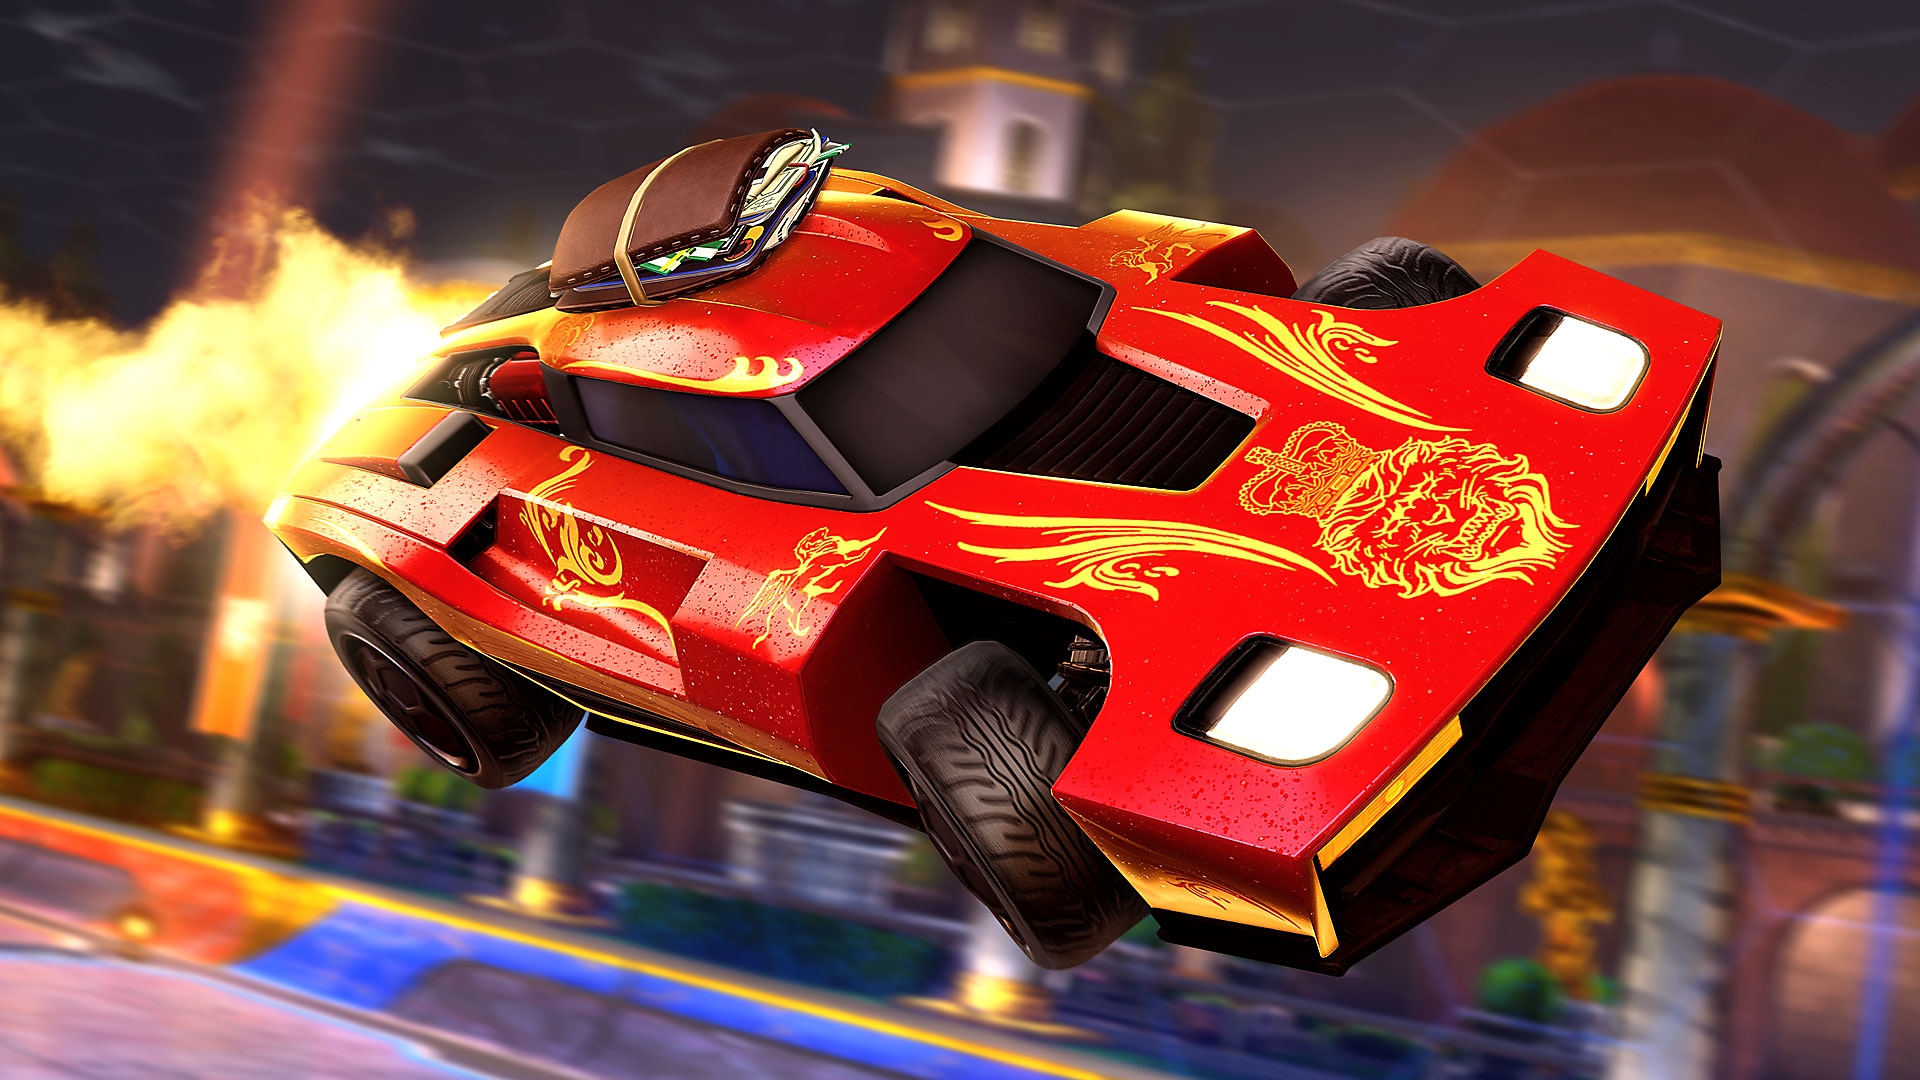 Rocket League στιγμιότυπο που δείχνει ένα κόκκινο σπορ αυτοκίνητο με φλόγες να έρχεται από πίσω